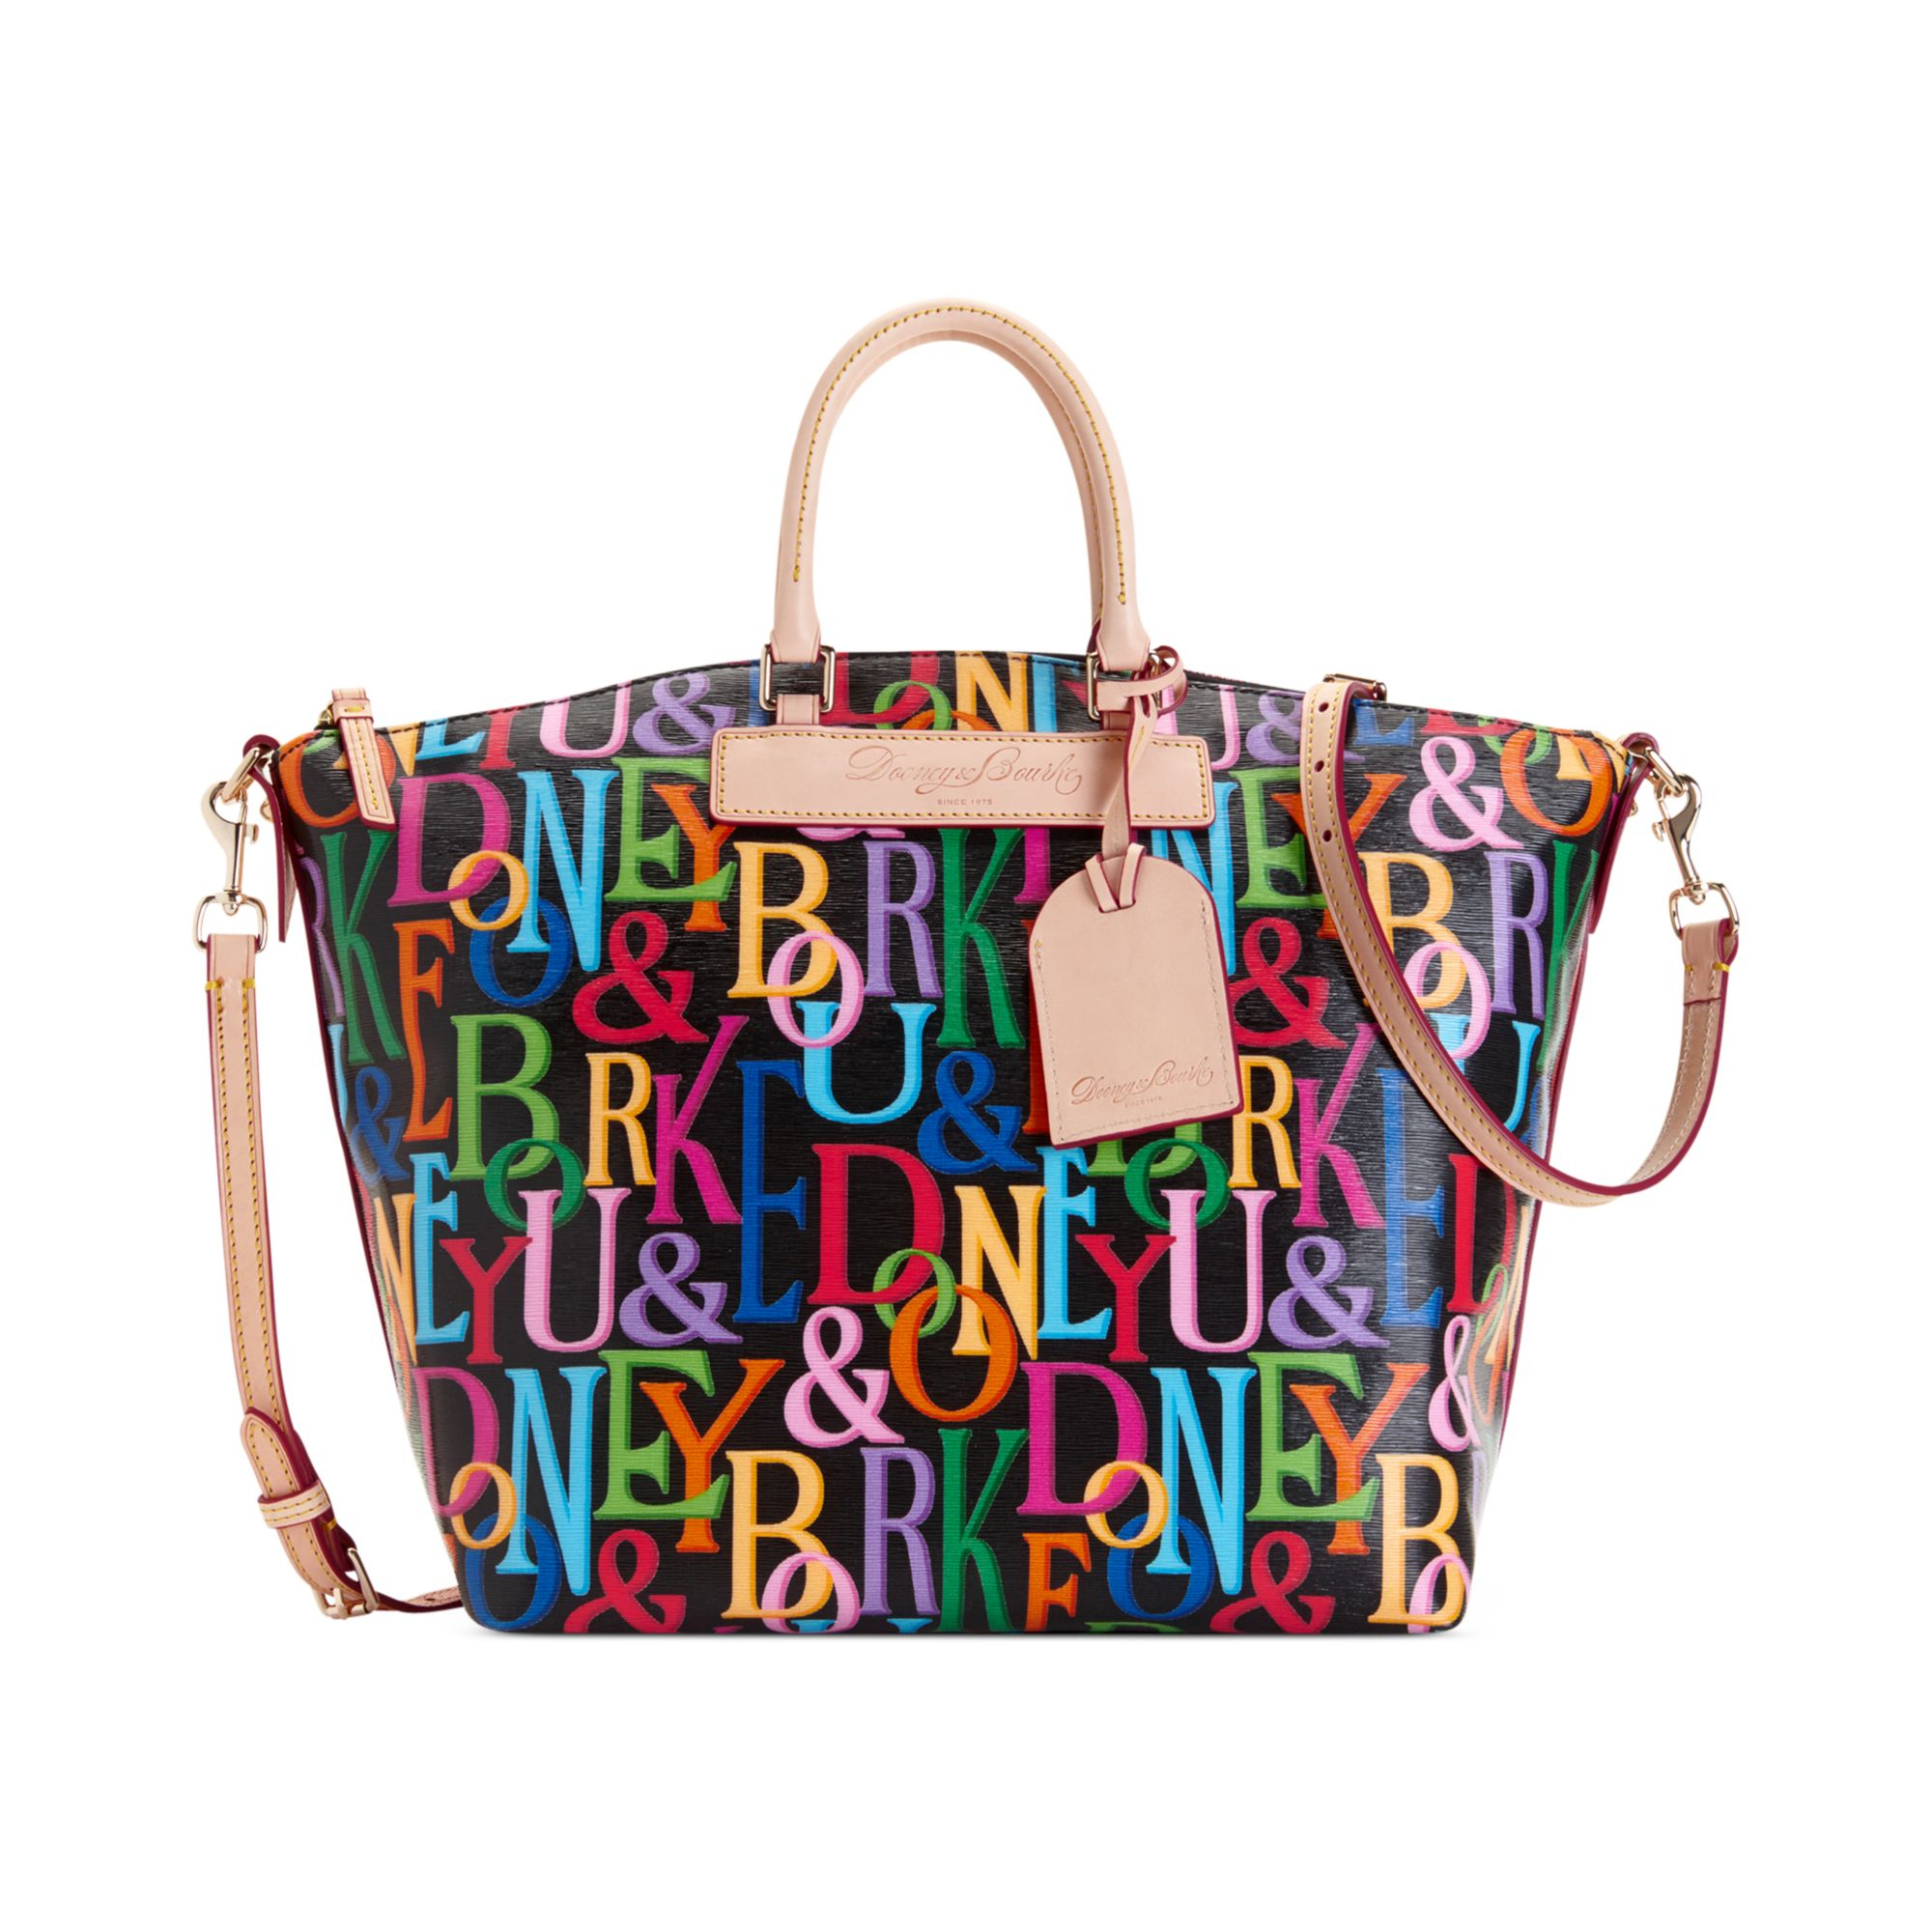 Women's Dooney & Bourke Handbags, Bags